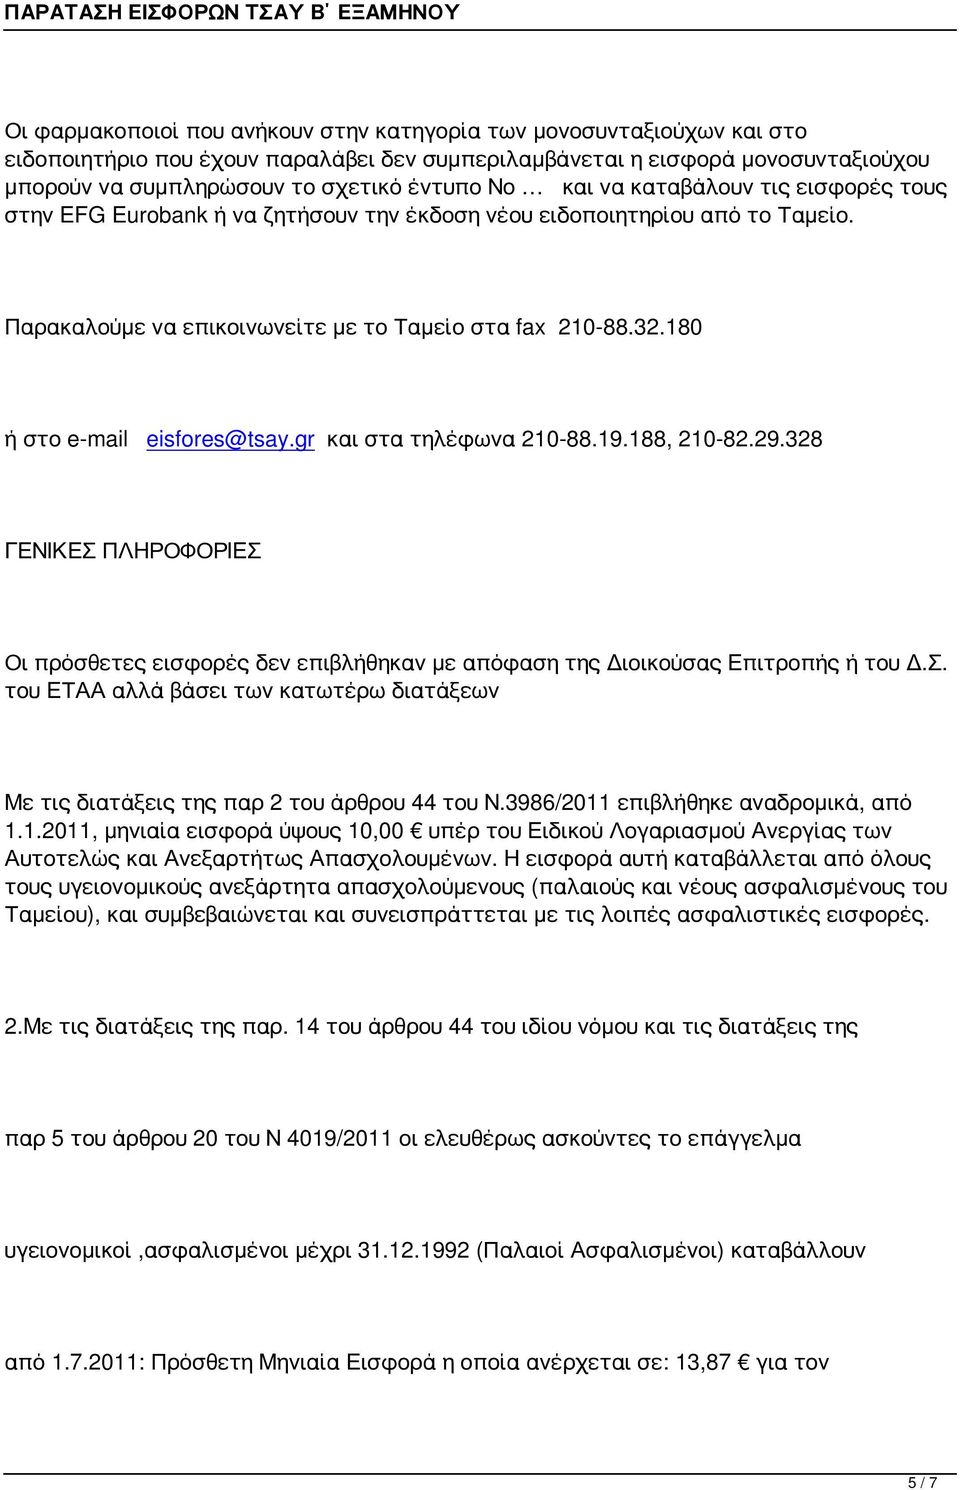 180 ή στο e-mail eisfores@tsay.gr και στα τηλέφωνα 210-88.19.188, 210-82.29.328 ΓΕΝΙΚΕΣ ΠΛΗΡΟΦΟΡΙΕΣ Οι πρόσθετες εισφορές δεν επιβλήθηκαν με απόφαση της Διοικούσας Επιτροπής ή του Δ.Σ. του ΕΤΑΑ αλλά βάσει των κατωτέρω διατάξεων Με τις διατάξεις της παρ 2 του άρθρου 44 του Ν.